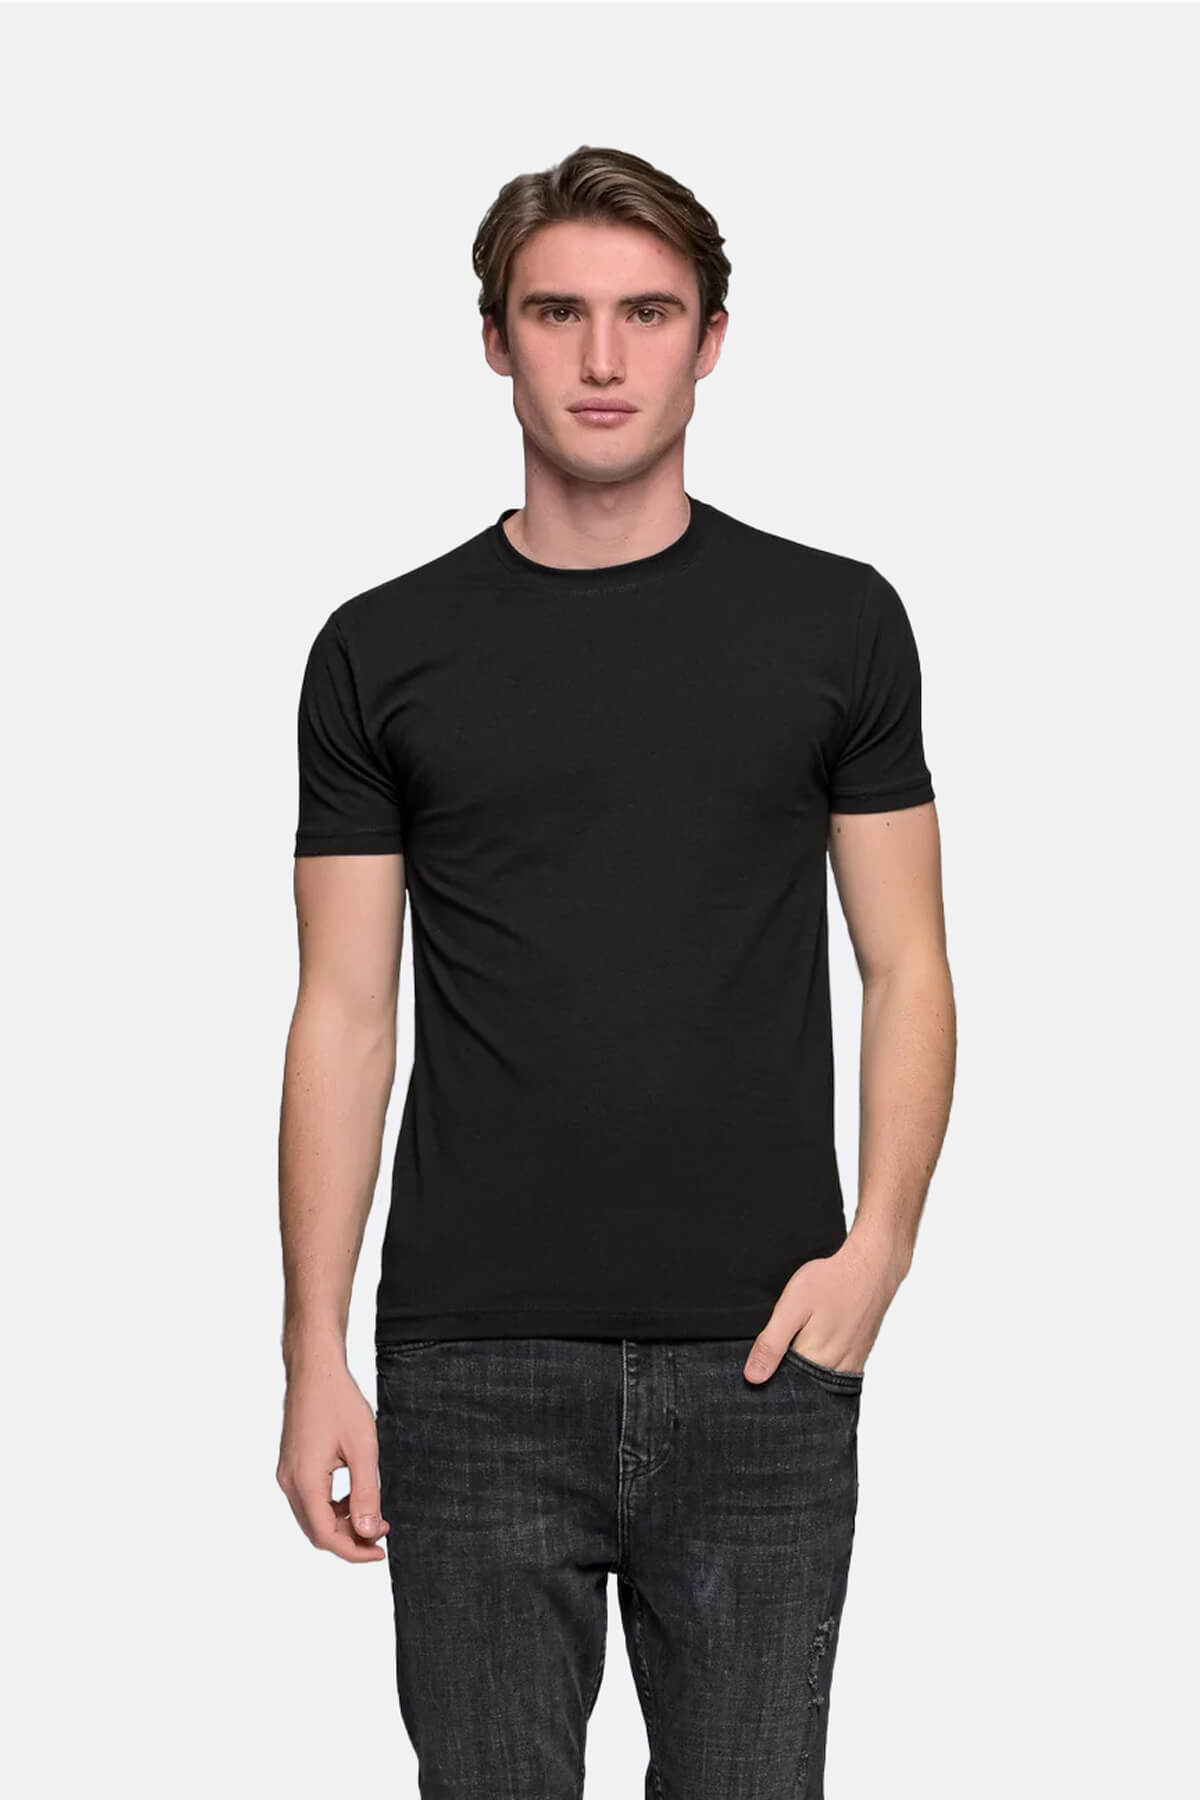 Everbest T-Shirt Μονόχρωμο Basic